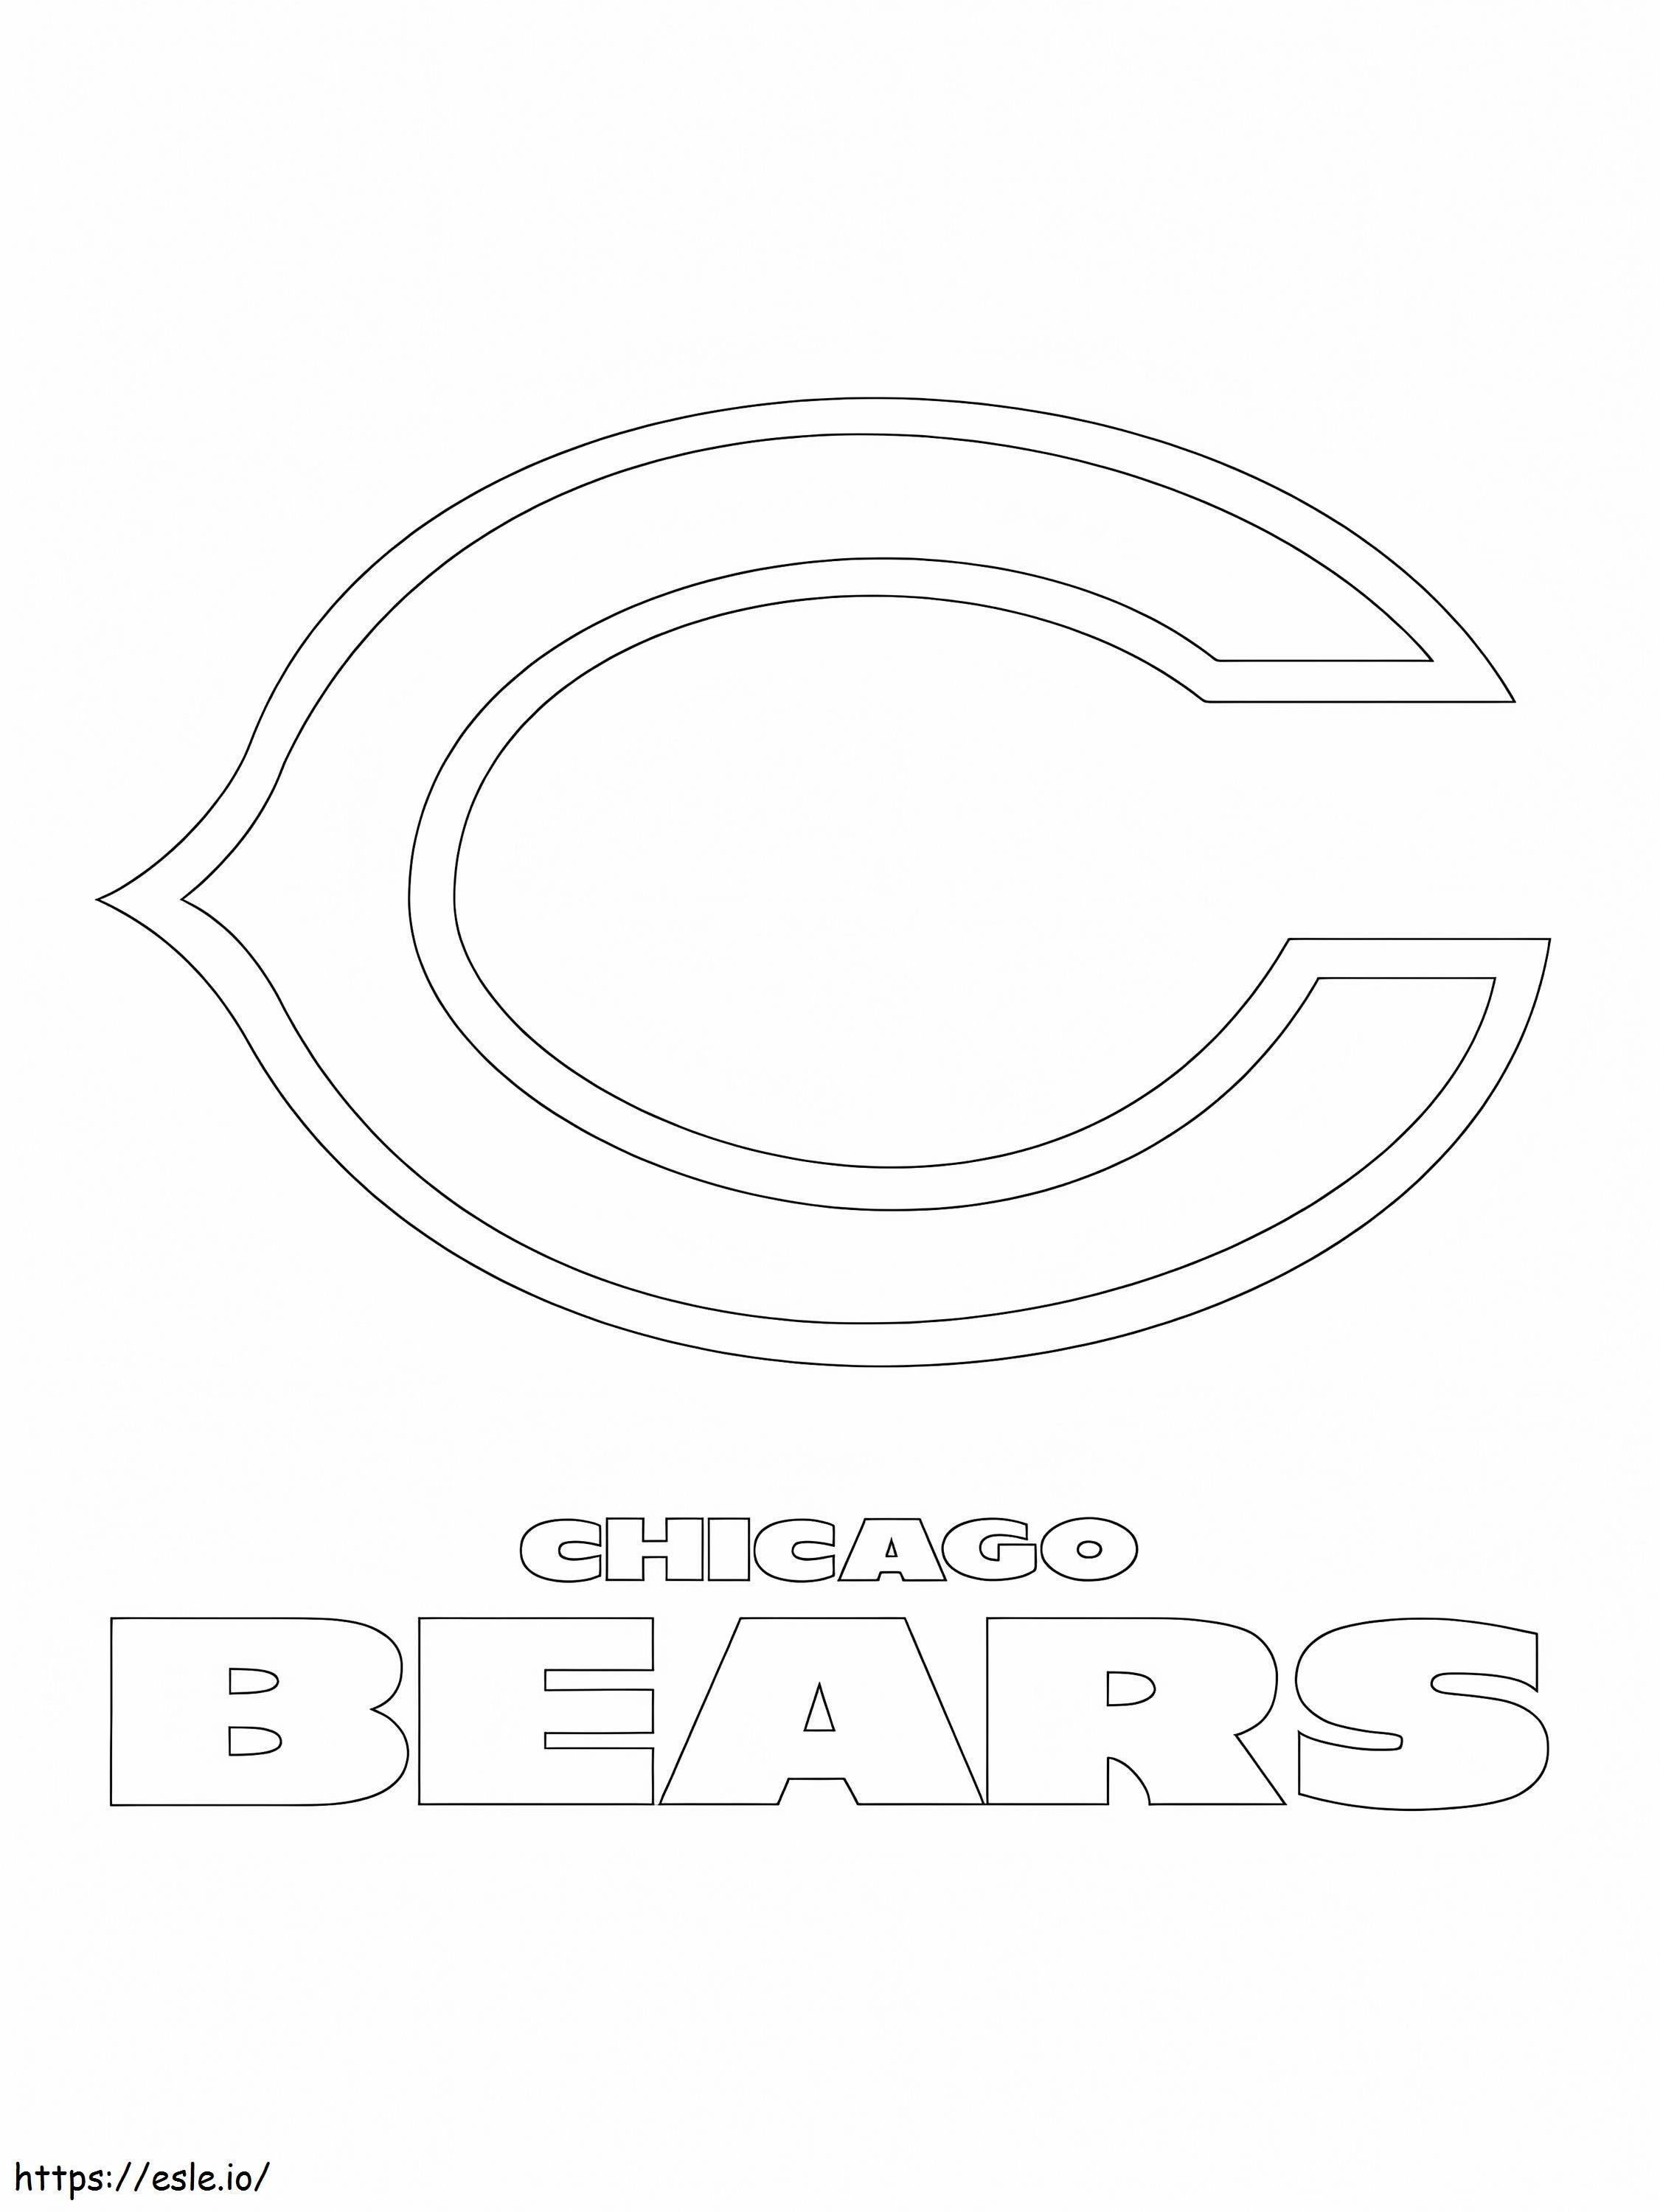 Logotipo do Chicago Bears para colorir